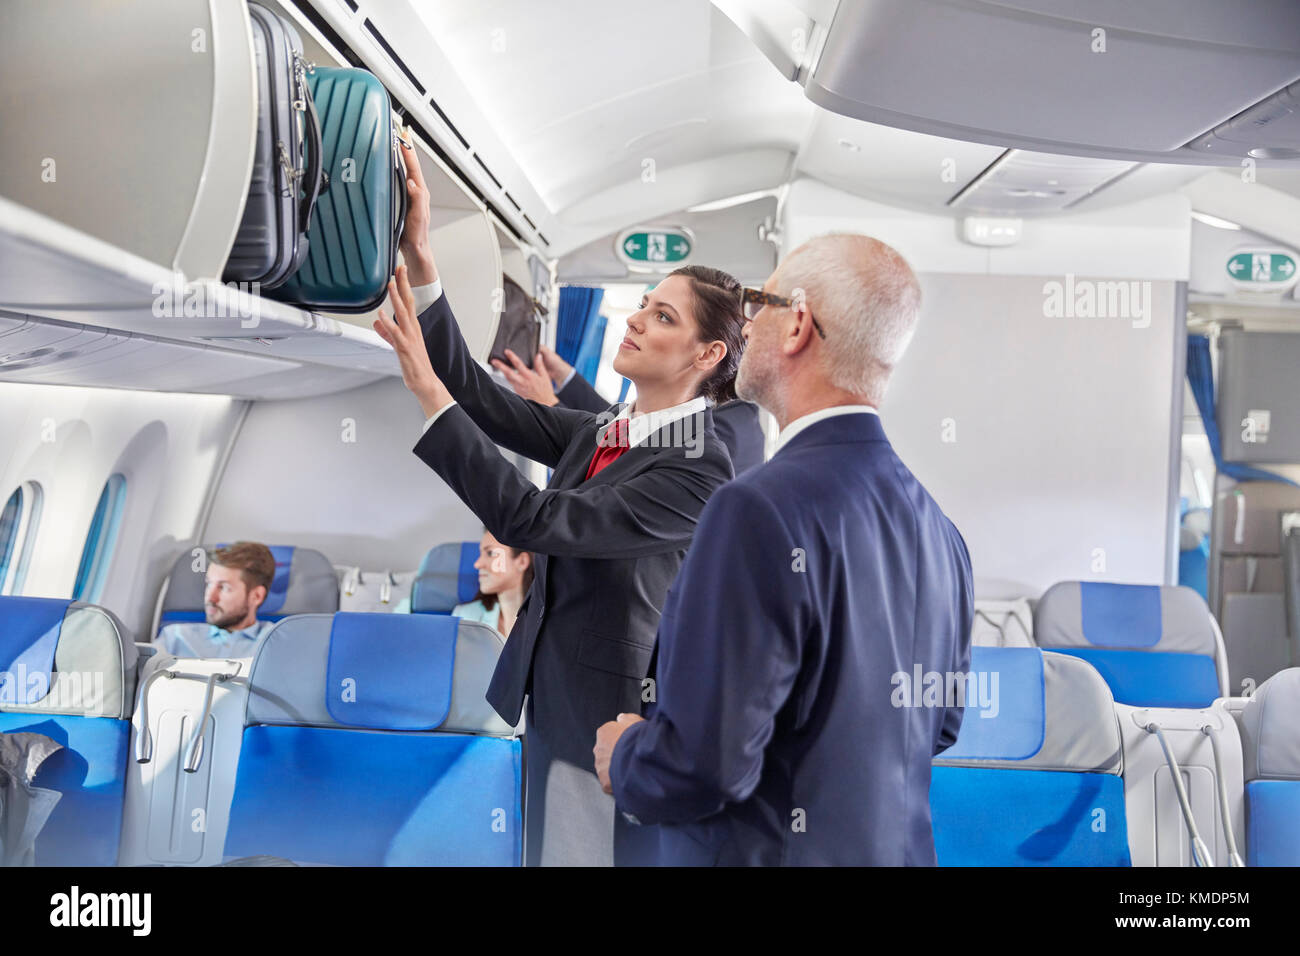 Der Flugbegleiter hilft dem Geschäftsmann, das Gepäck in den Gepäckraum zu legen Flugzeug Stockfoto